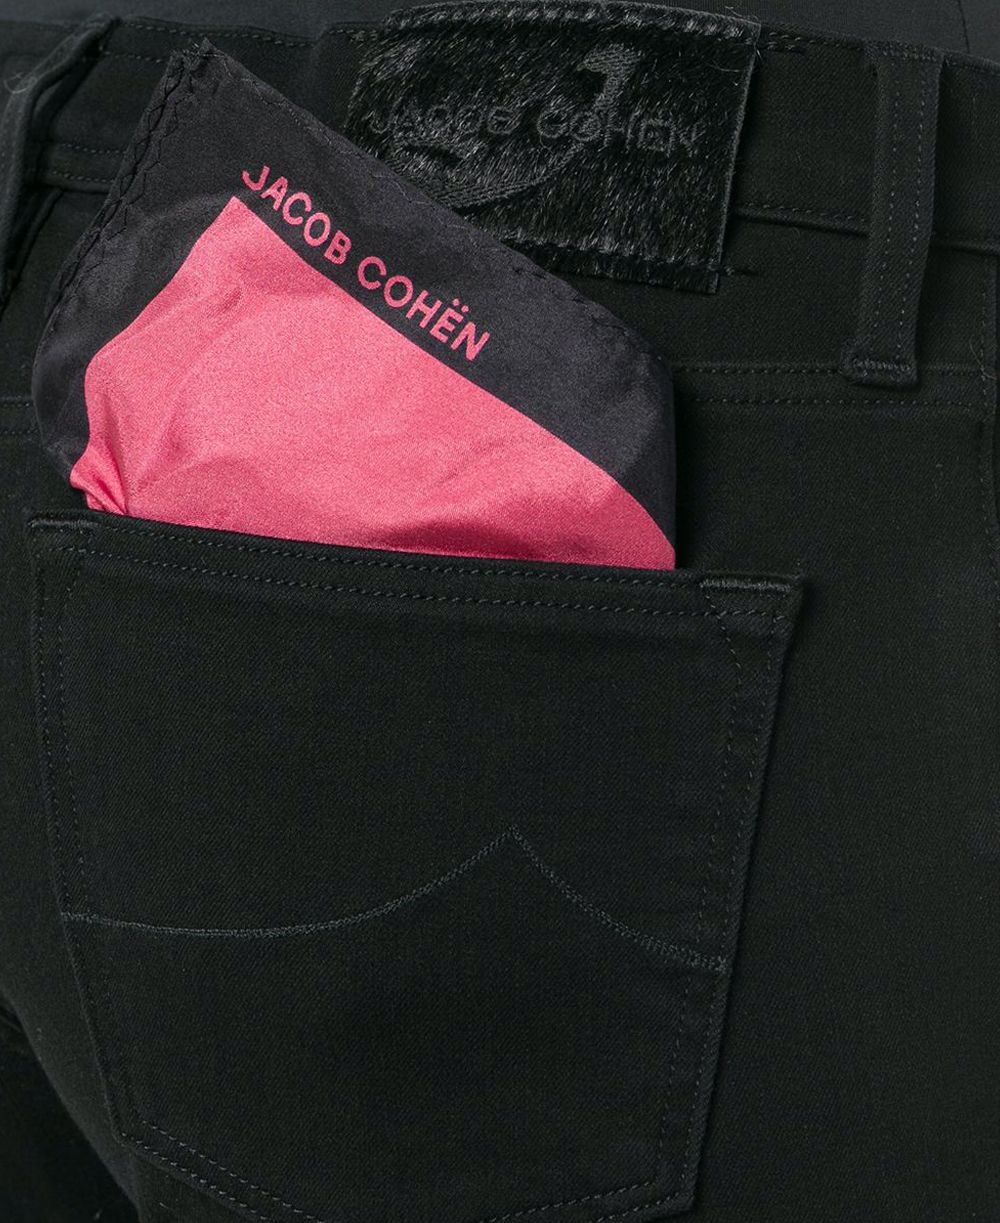 Jacob Cohen Sleek Black Kimberly Slim Jeans